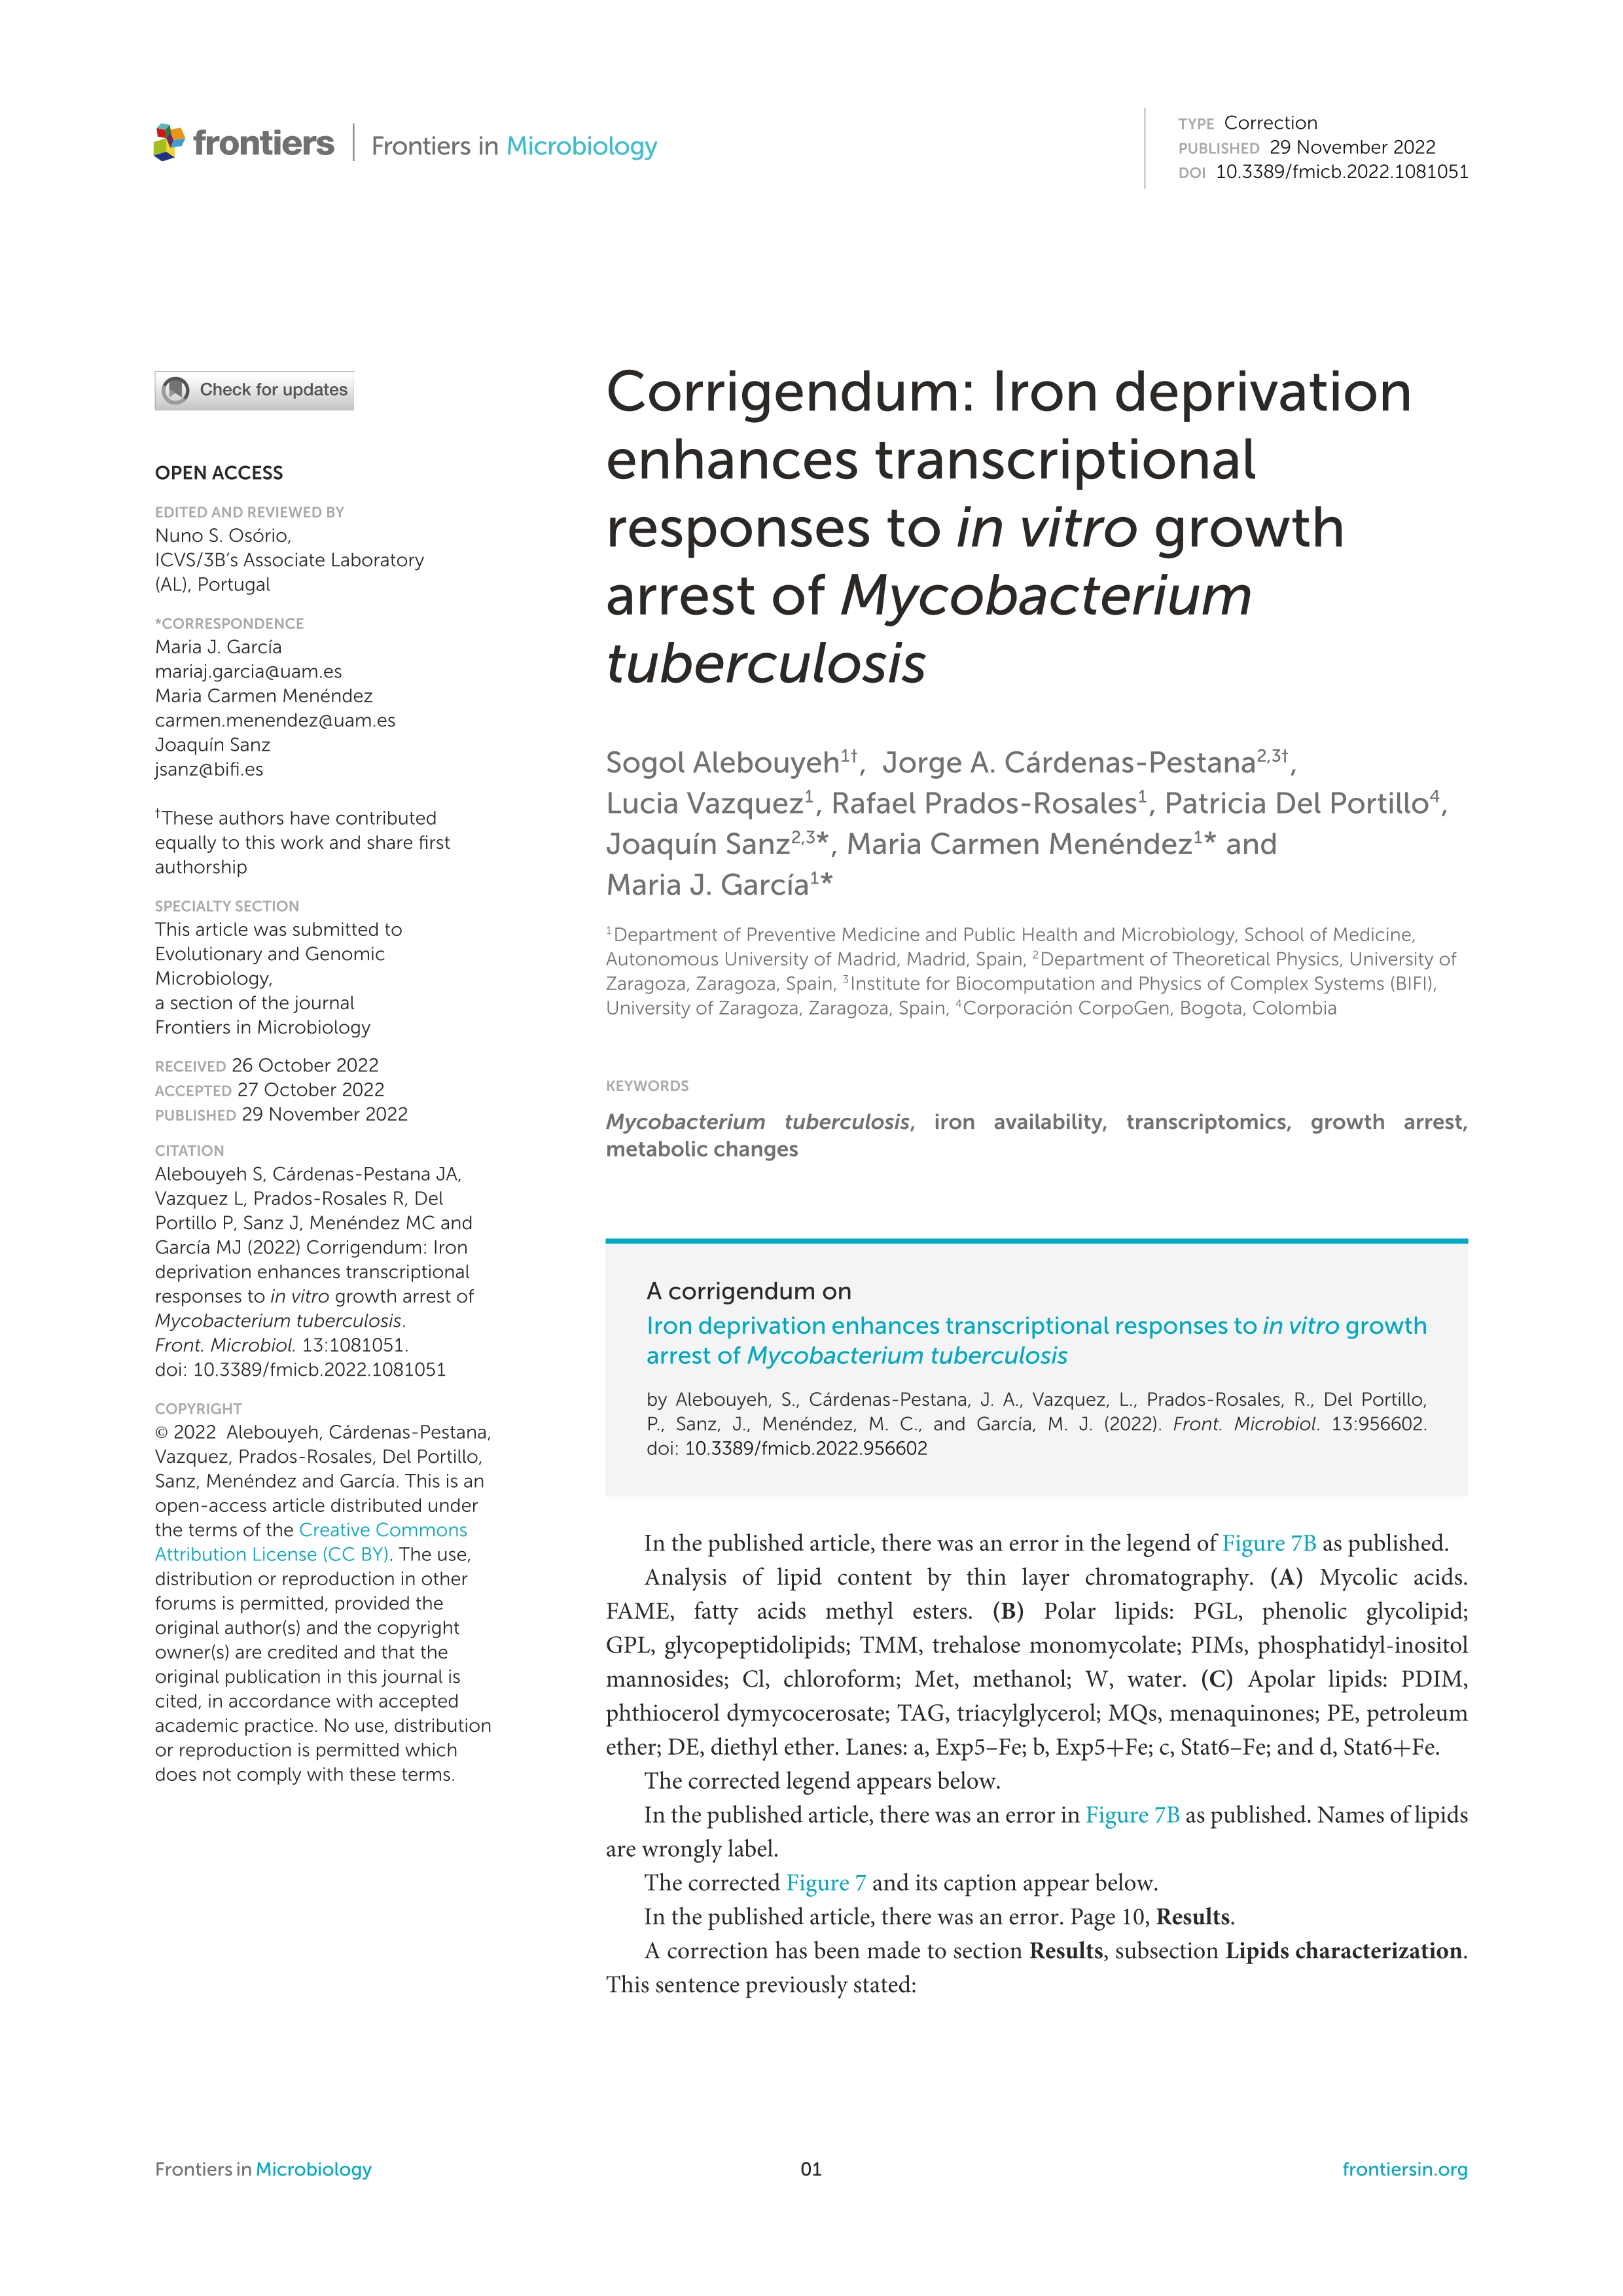 Corrigendum: Iron deprivation enhances transcriptional responses to in vitro growth arrest of Mycobacterium tuberculosis